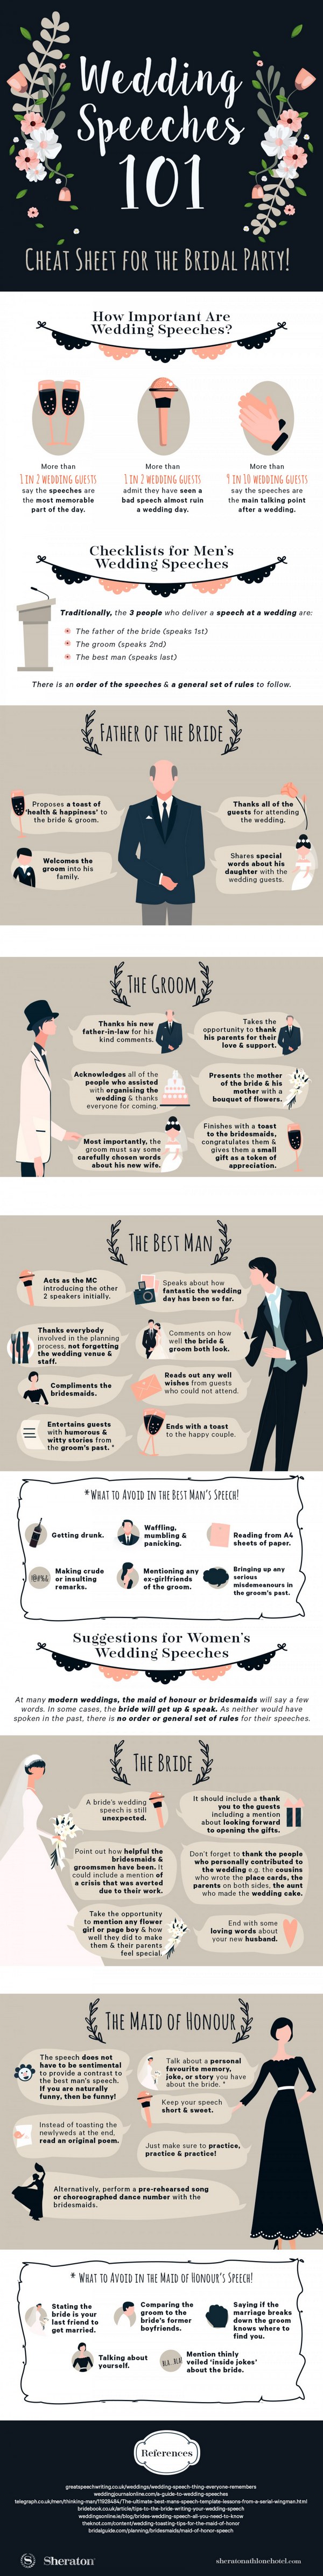 wedding speeches 101 infographic